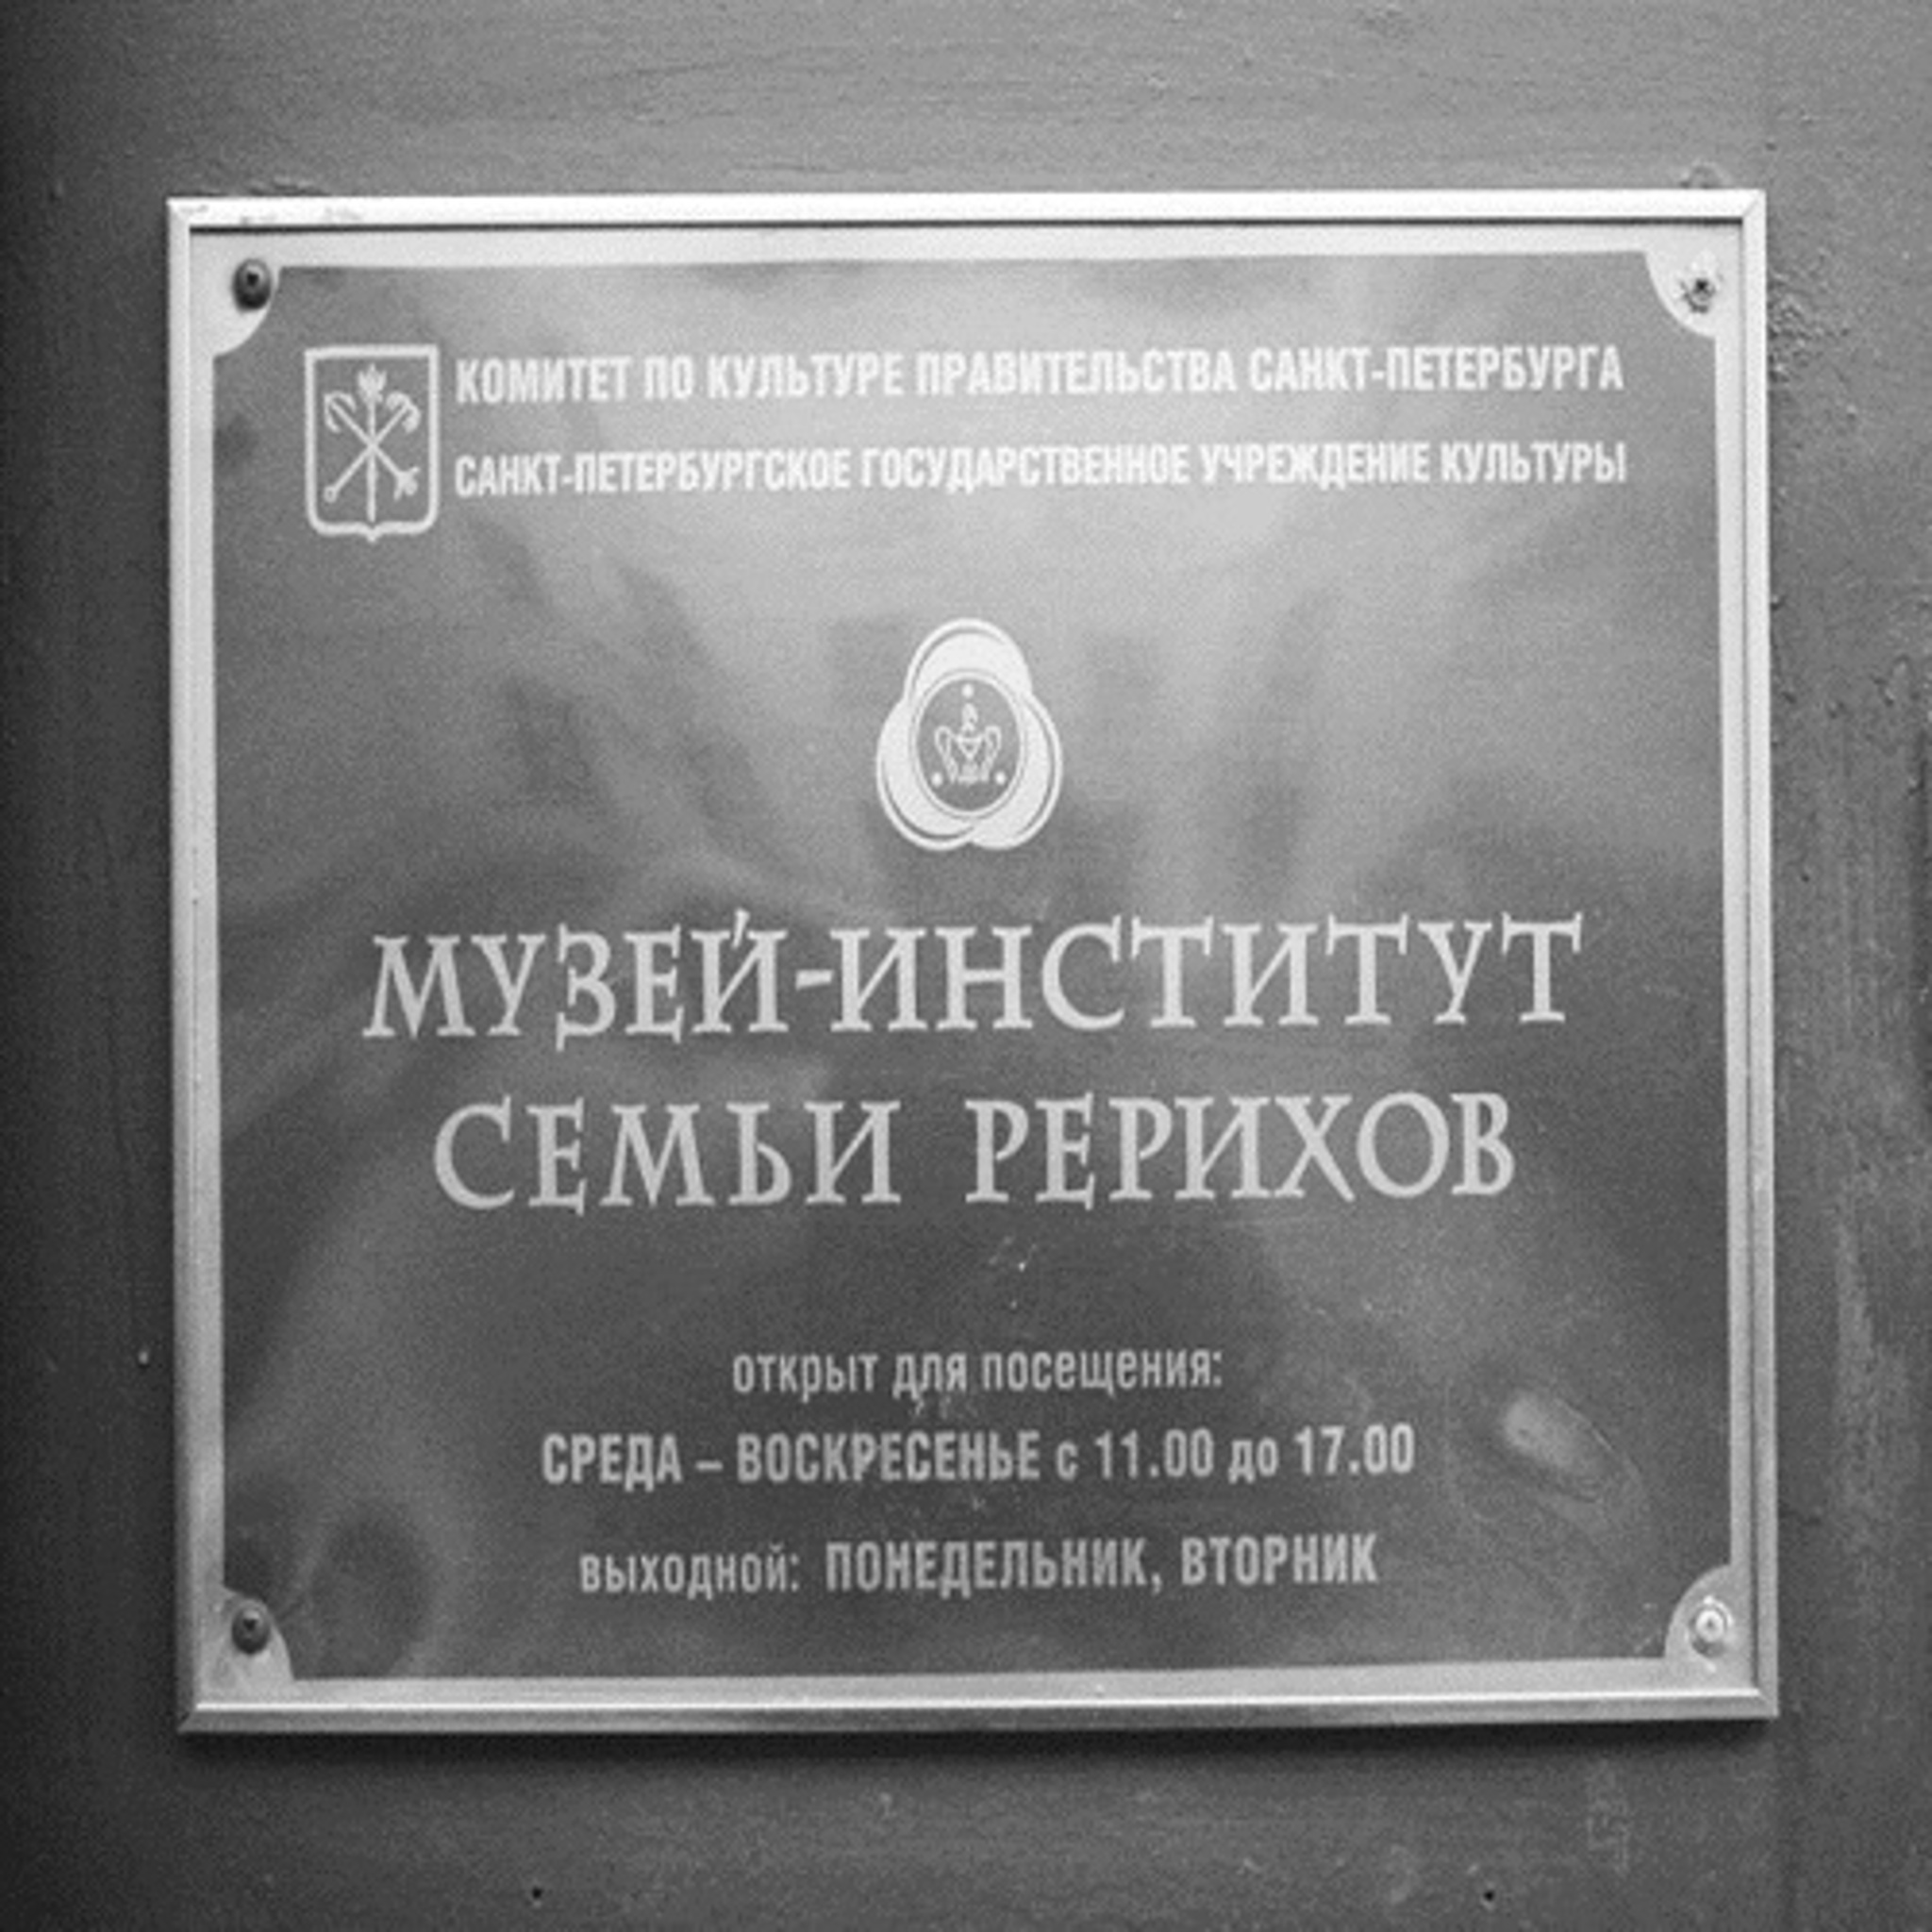 Санкт-Петербургский Государственный Музей-институт семьи Рерихов